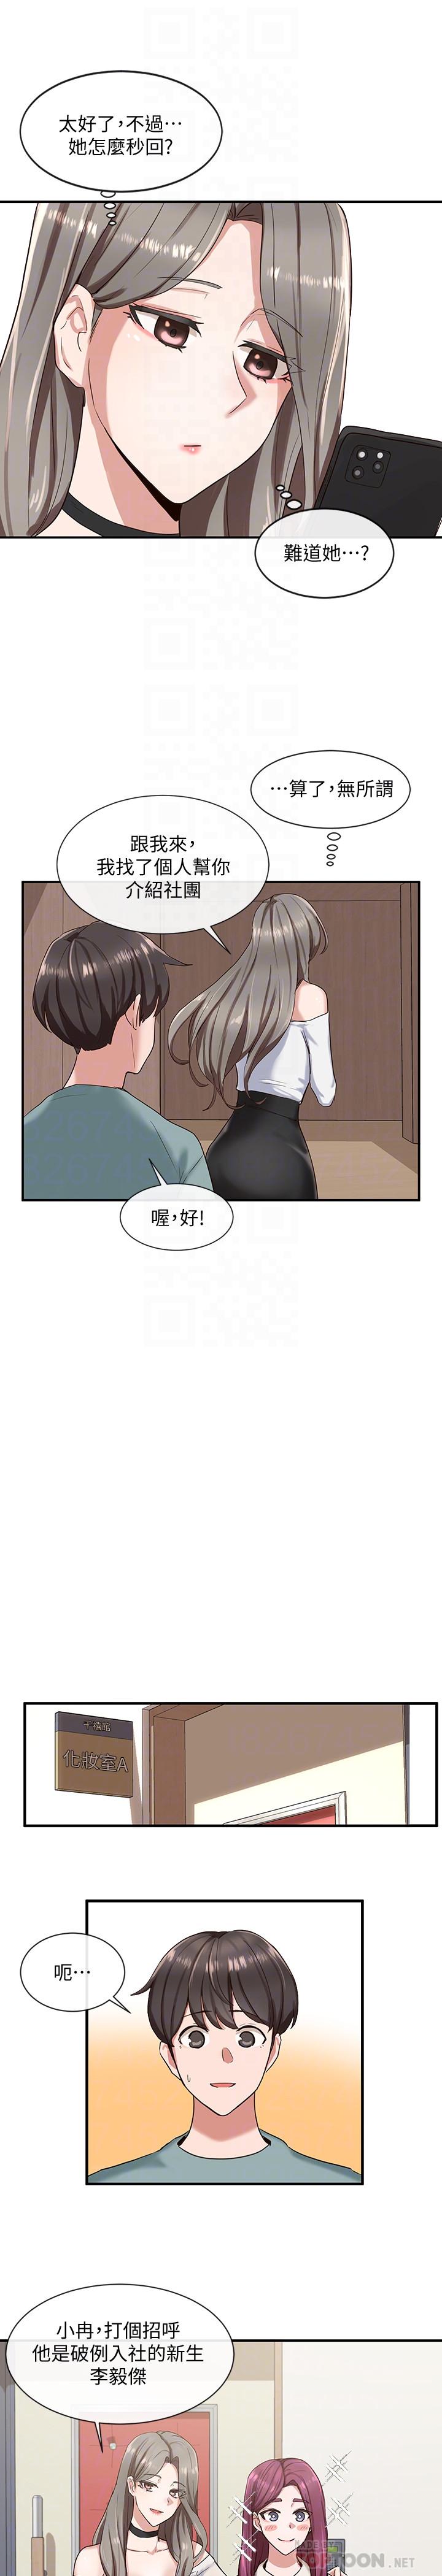 韩国污漫画 社團學姊 第4话-道具室的特殊用途 18